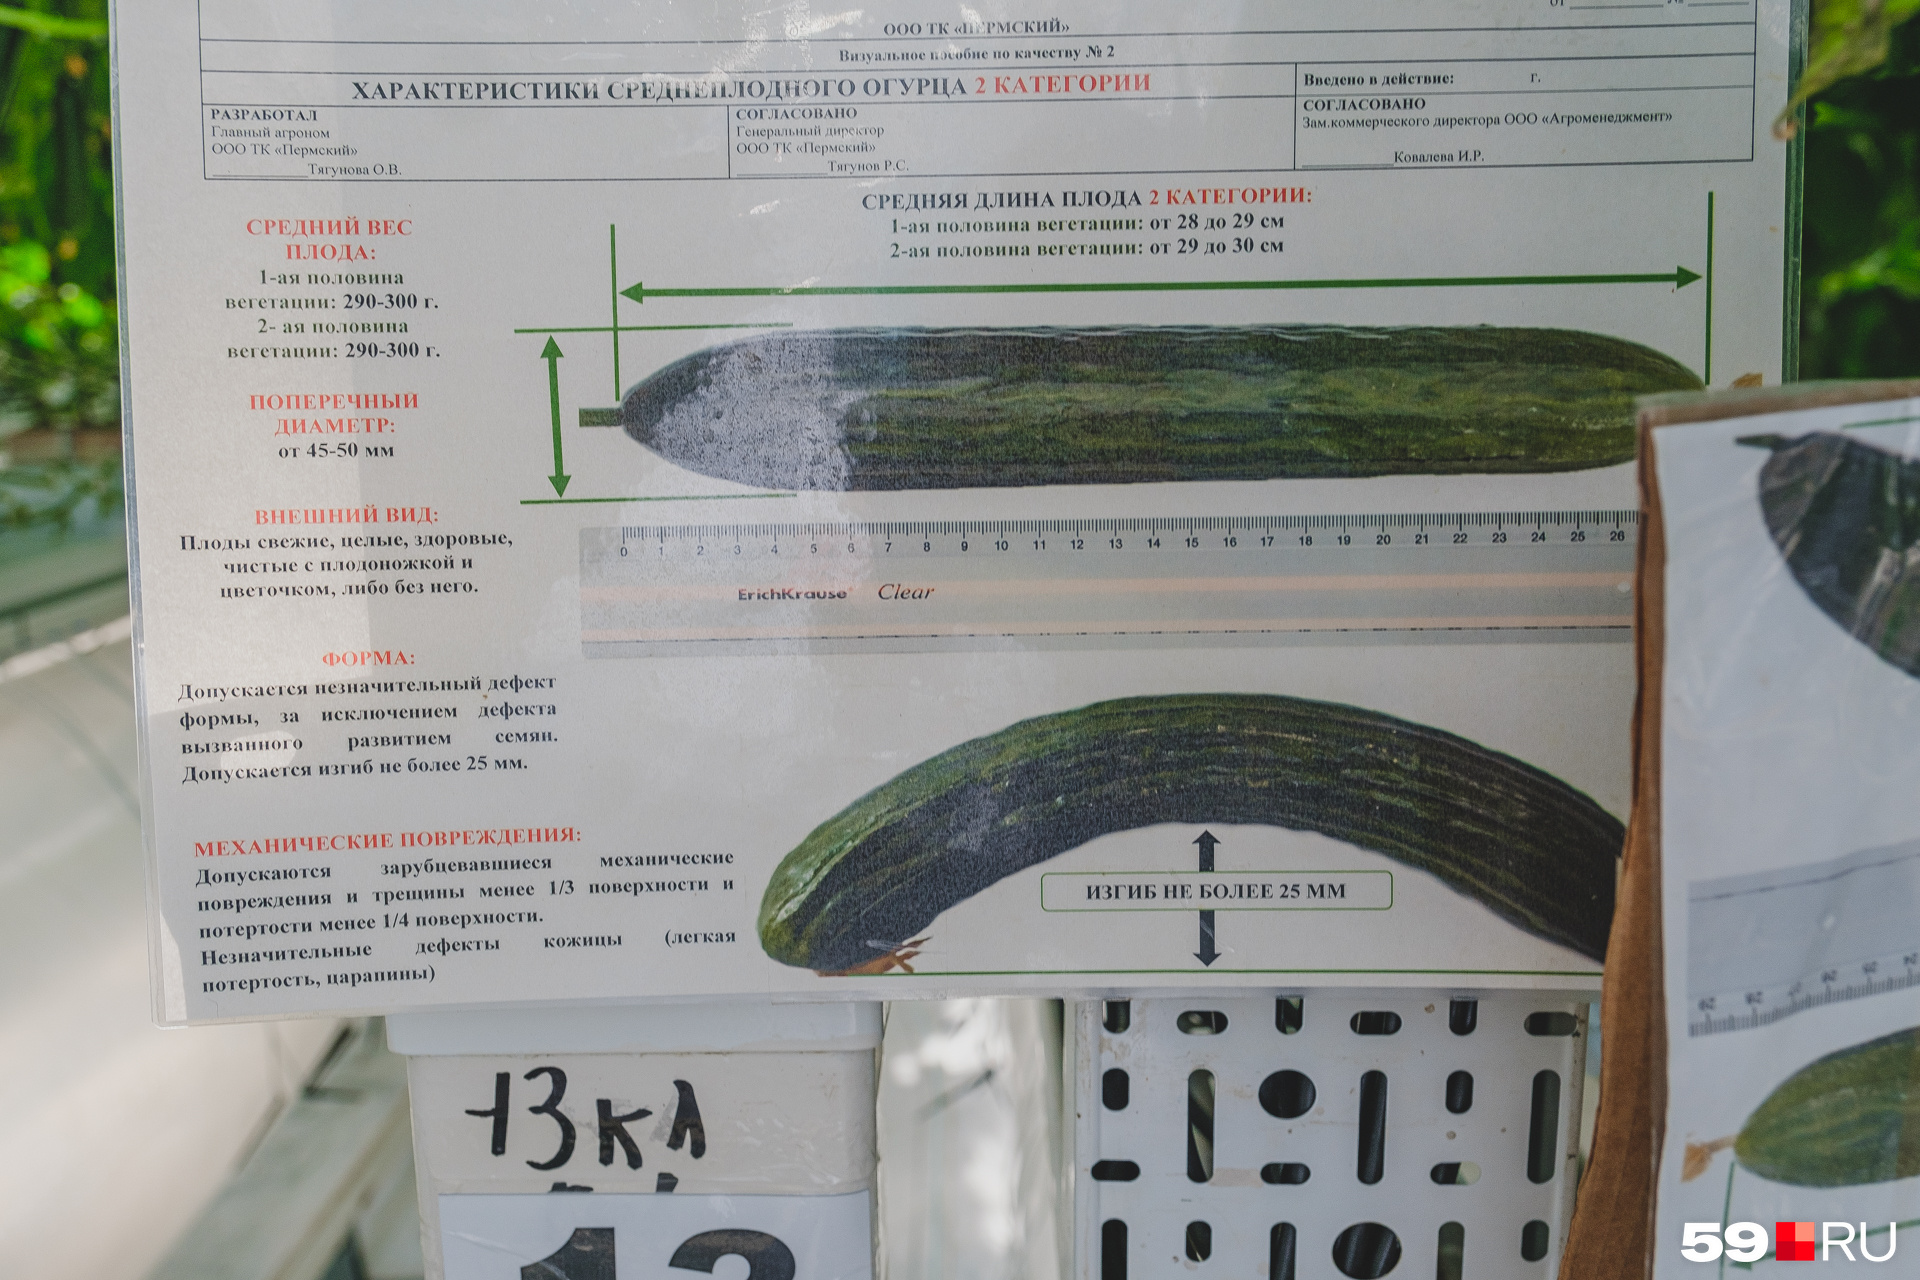 В каждой теплице висят таблицы с характеристиками овощей, которые можно отправлять на продажу. Неподходящие отбраковывают